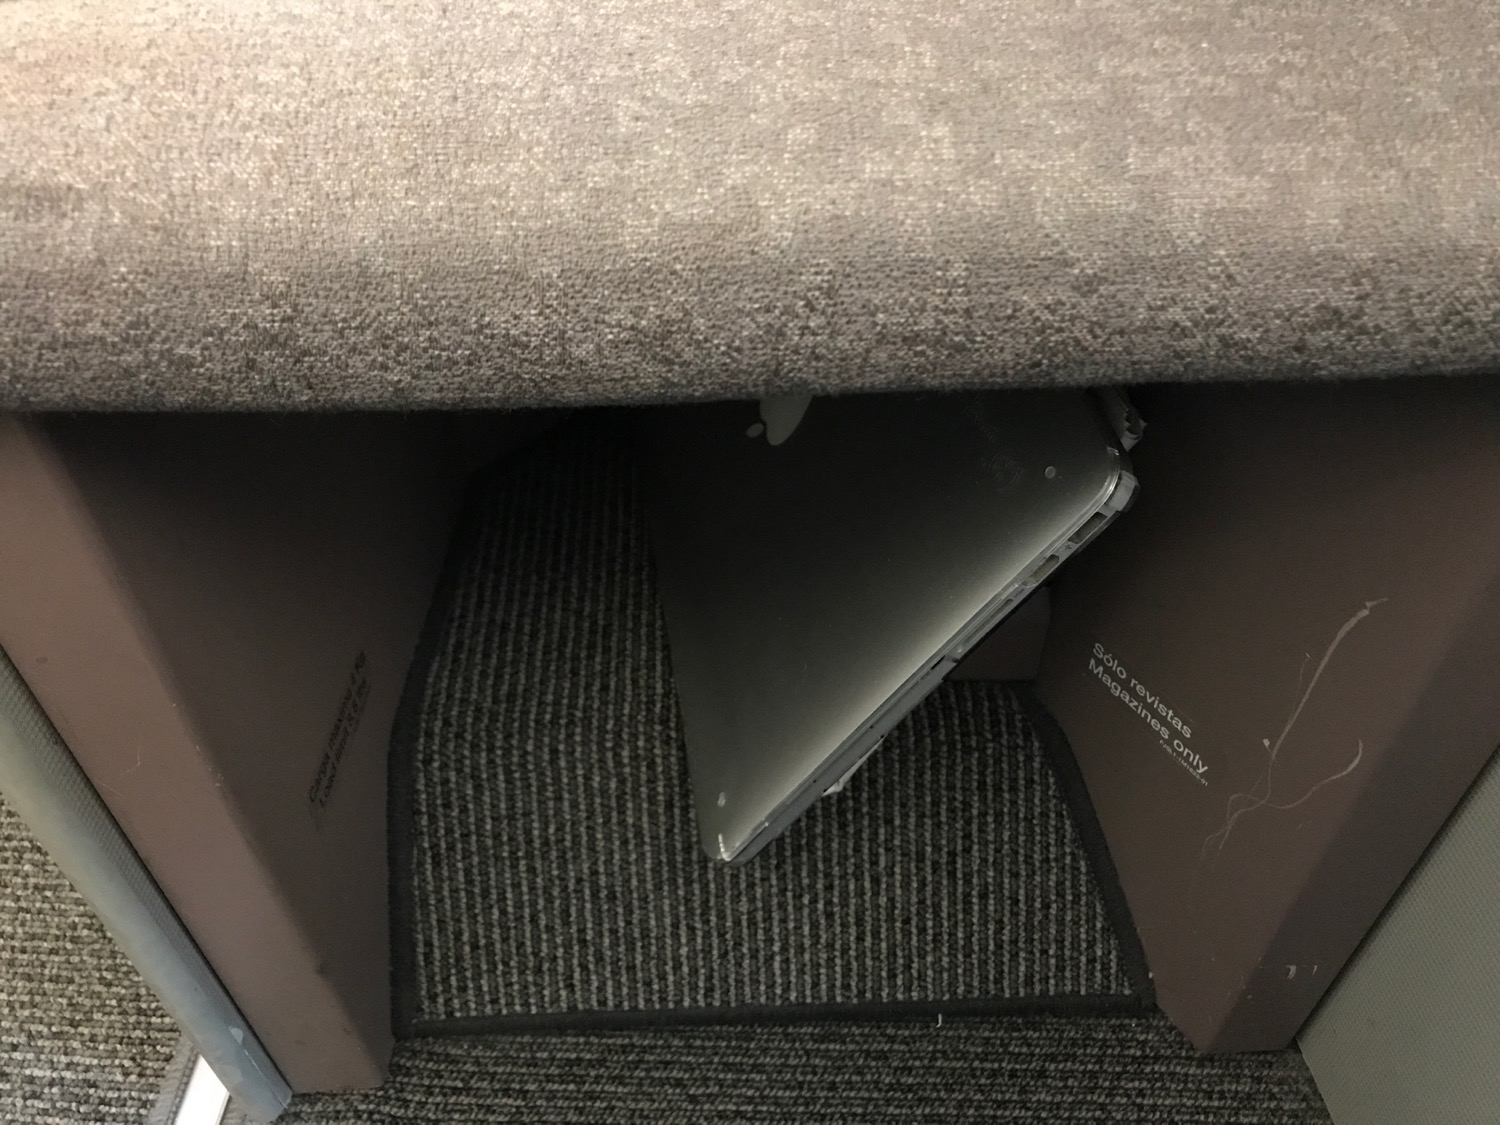 a laptop under a box